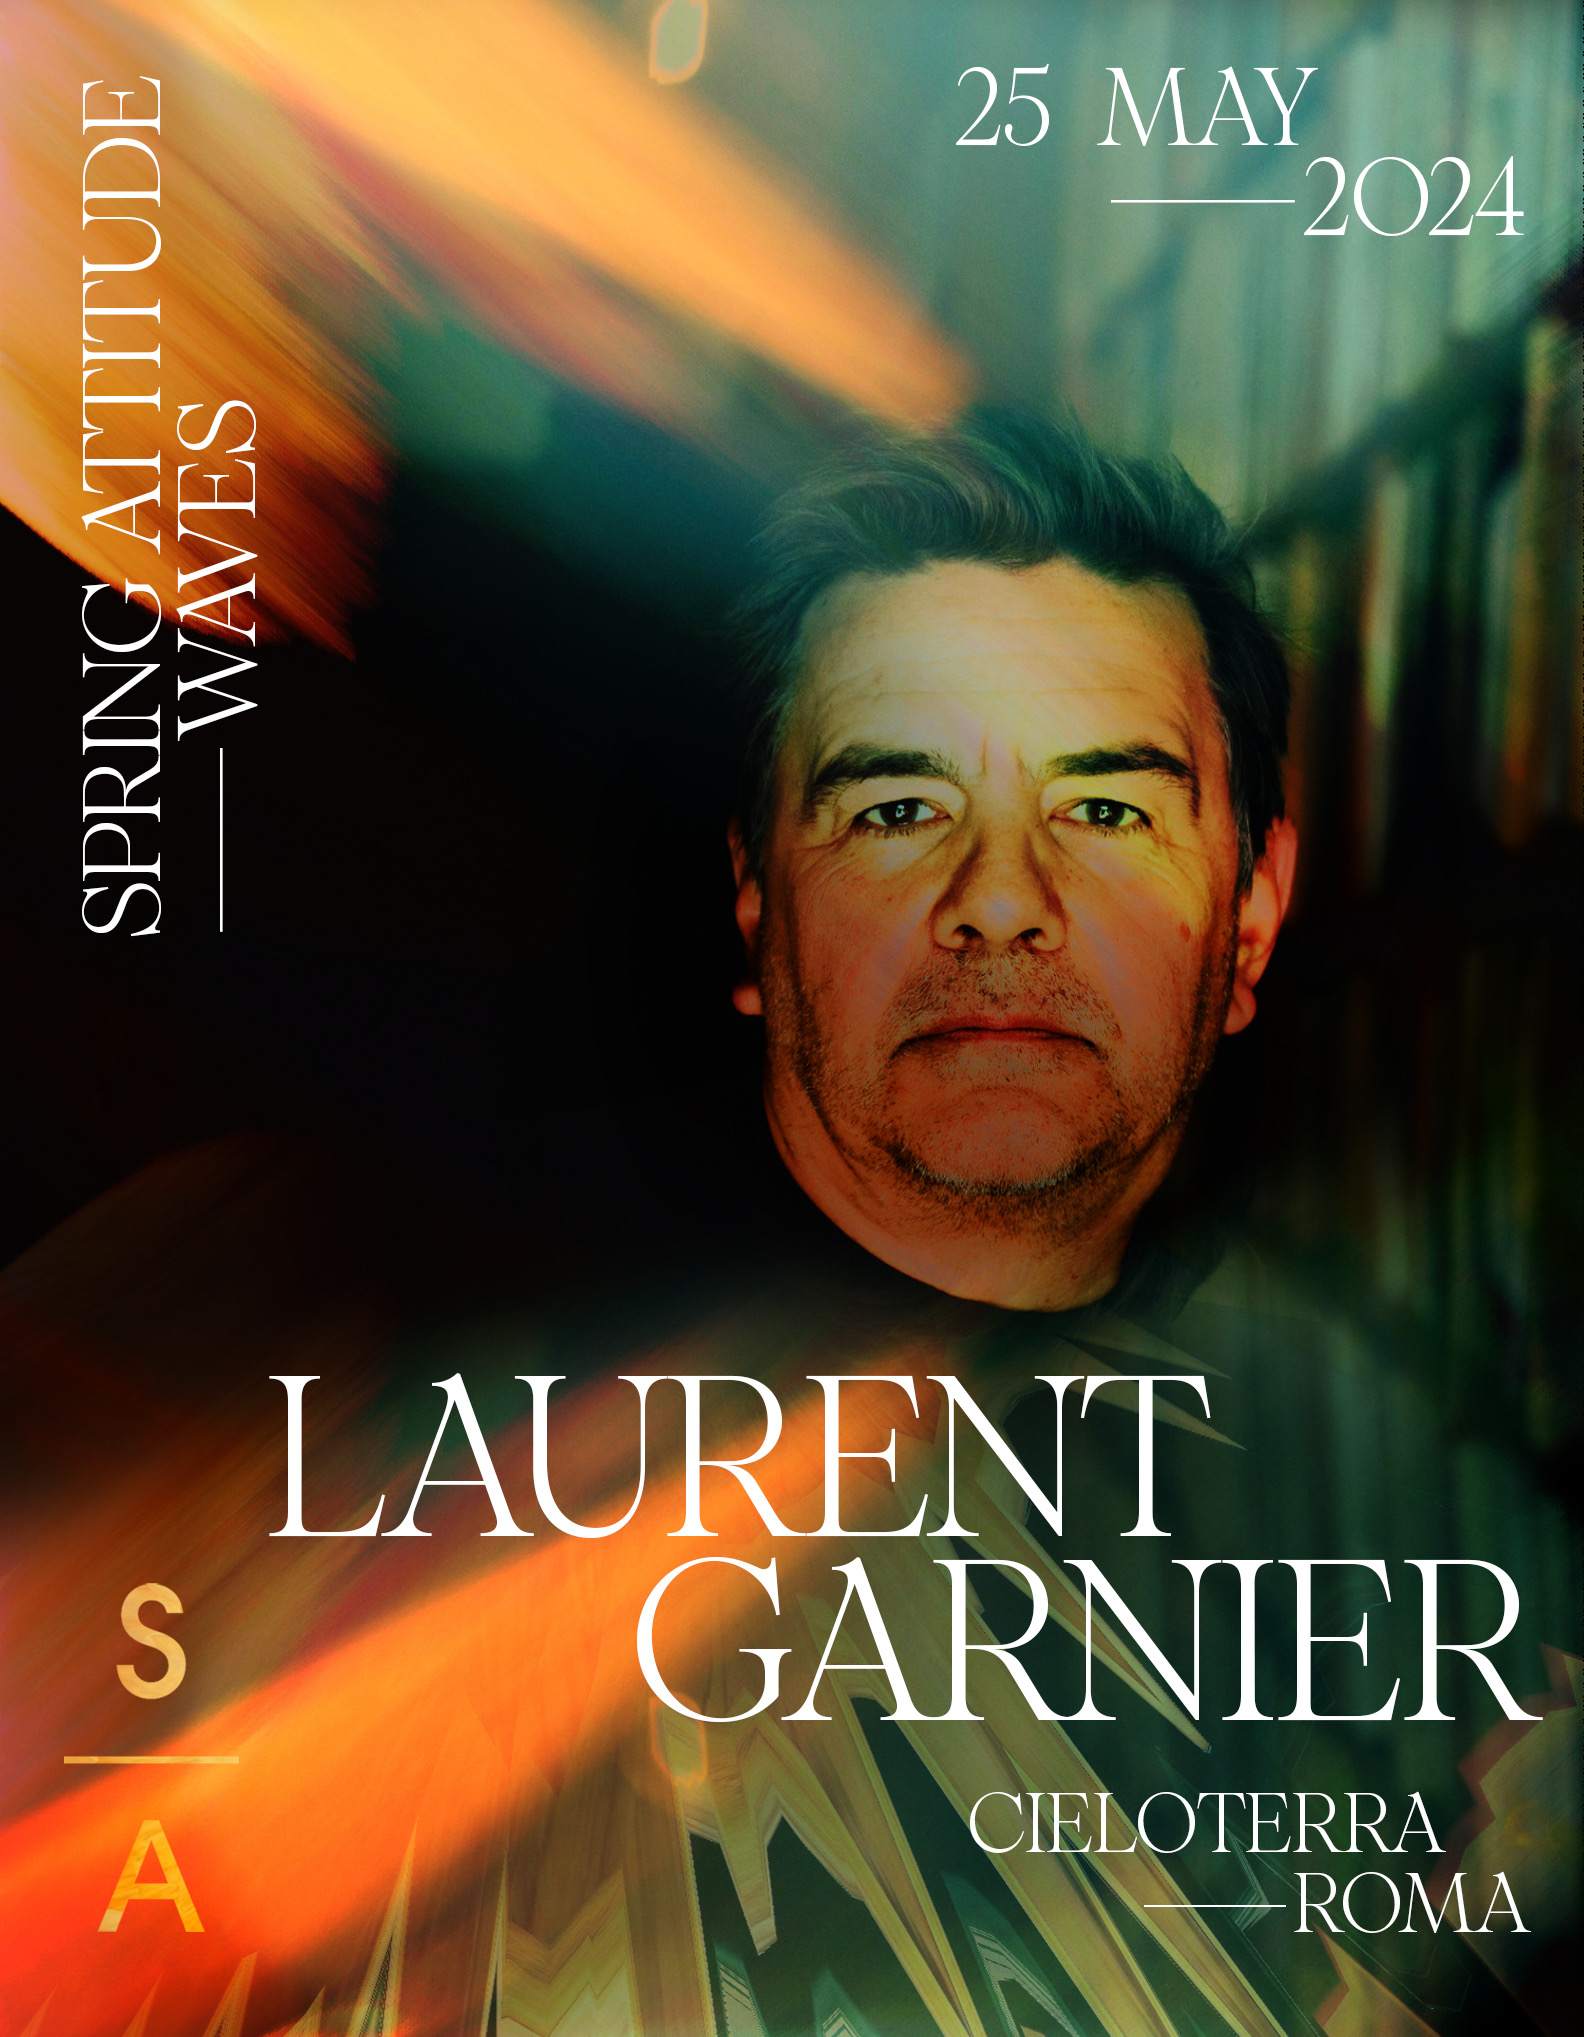 Laurent Garnier in Rome - フライヤー表